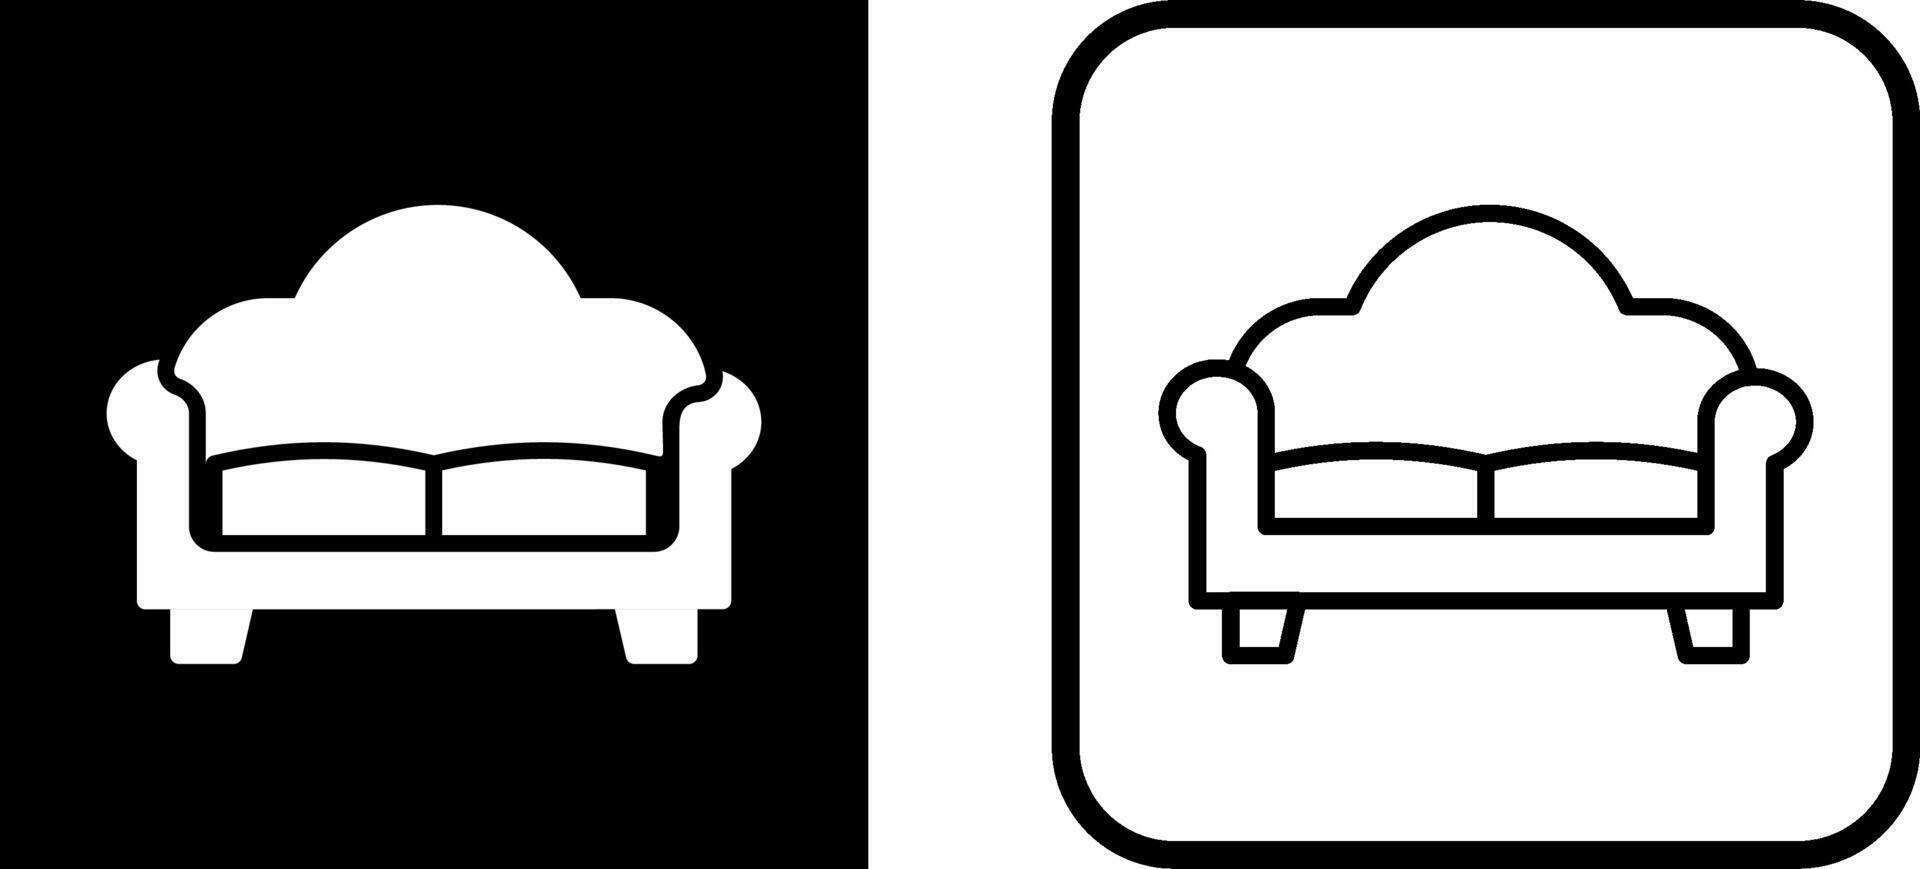 dubbele sofa vector icoon